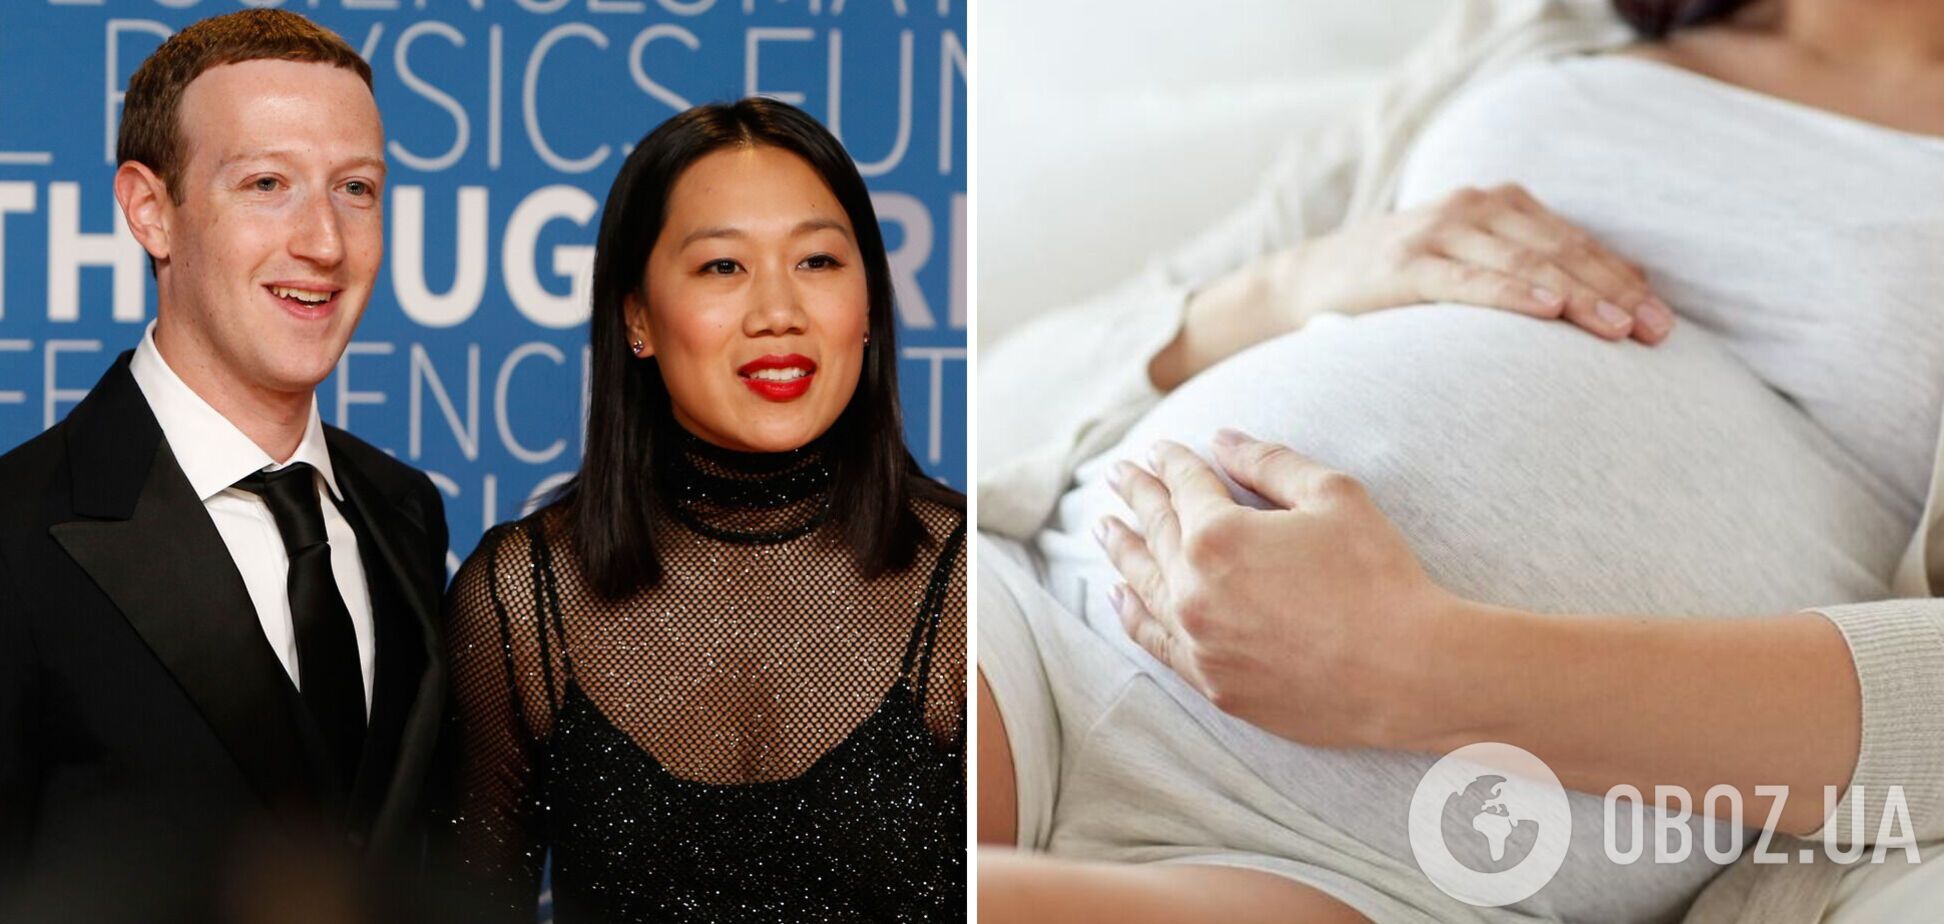 Засновник Facebook Марк Цукерберг втретє стане батьком:  з'явилося зворушливе фото з його вагітною дружиною